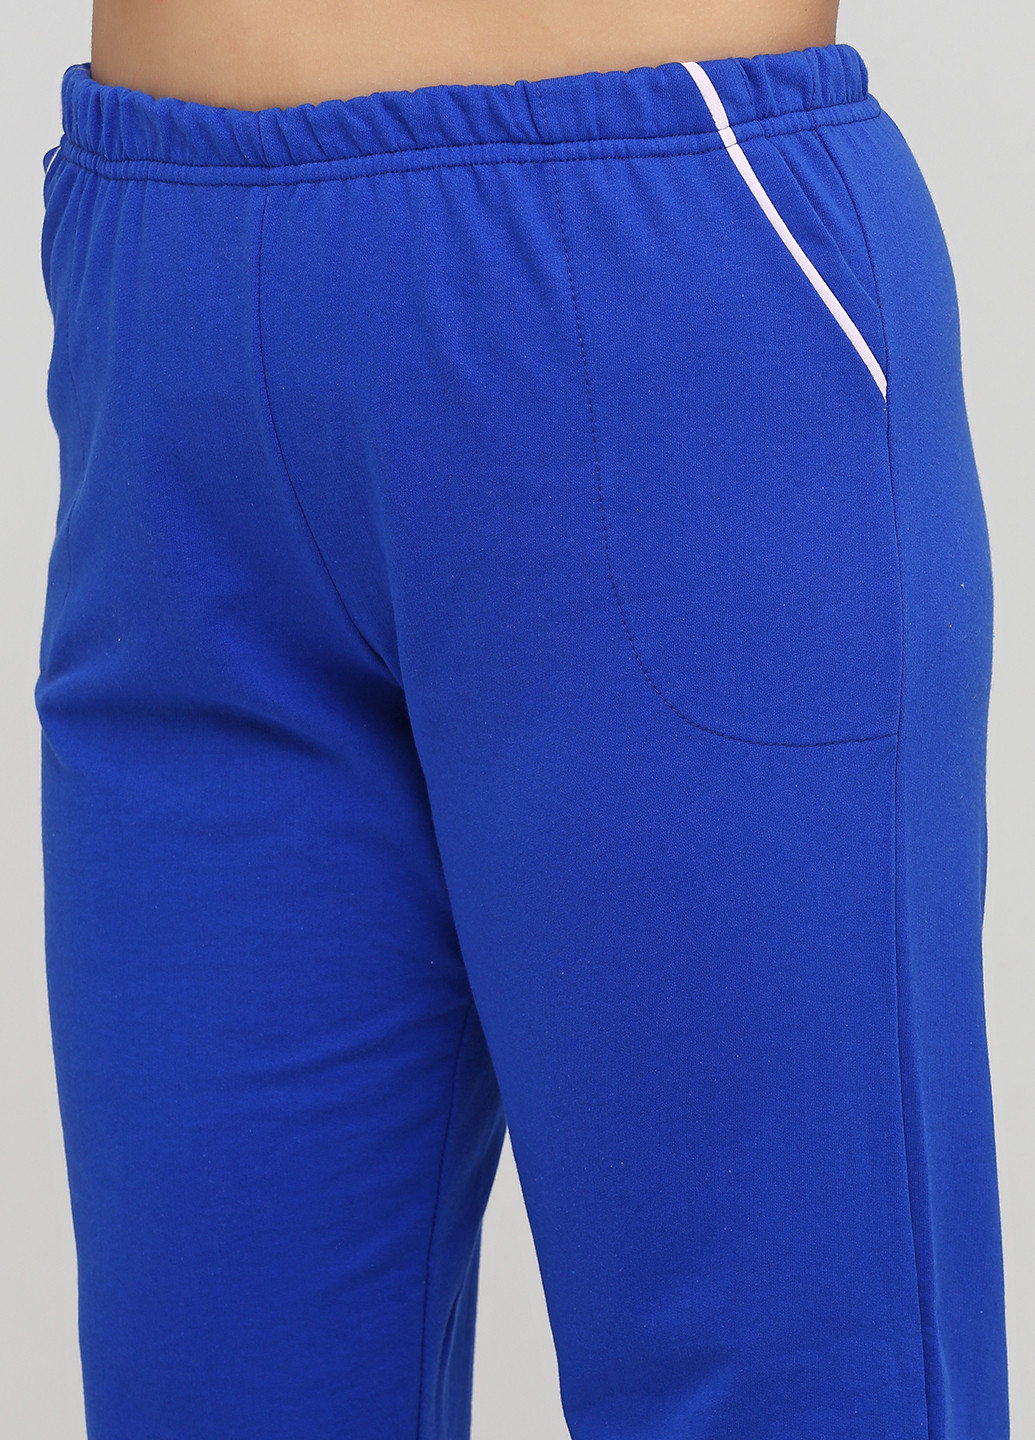 Темно-синяя всесезон пижама (маска для сна, свитшот, брюки) свитшот + брюки Трикомир